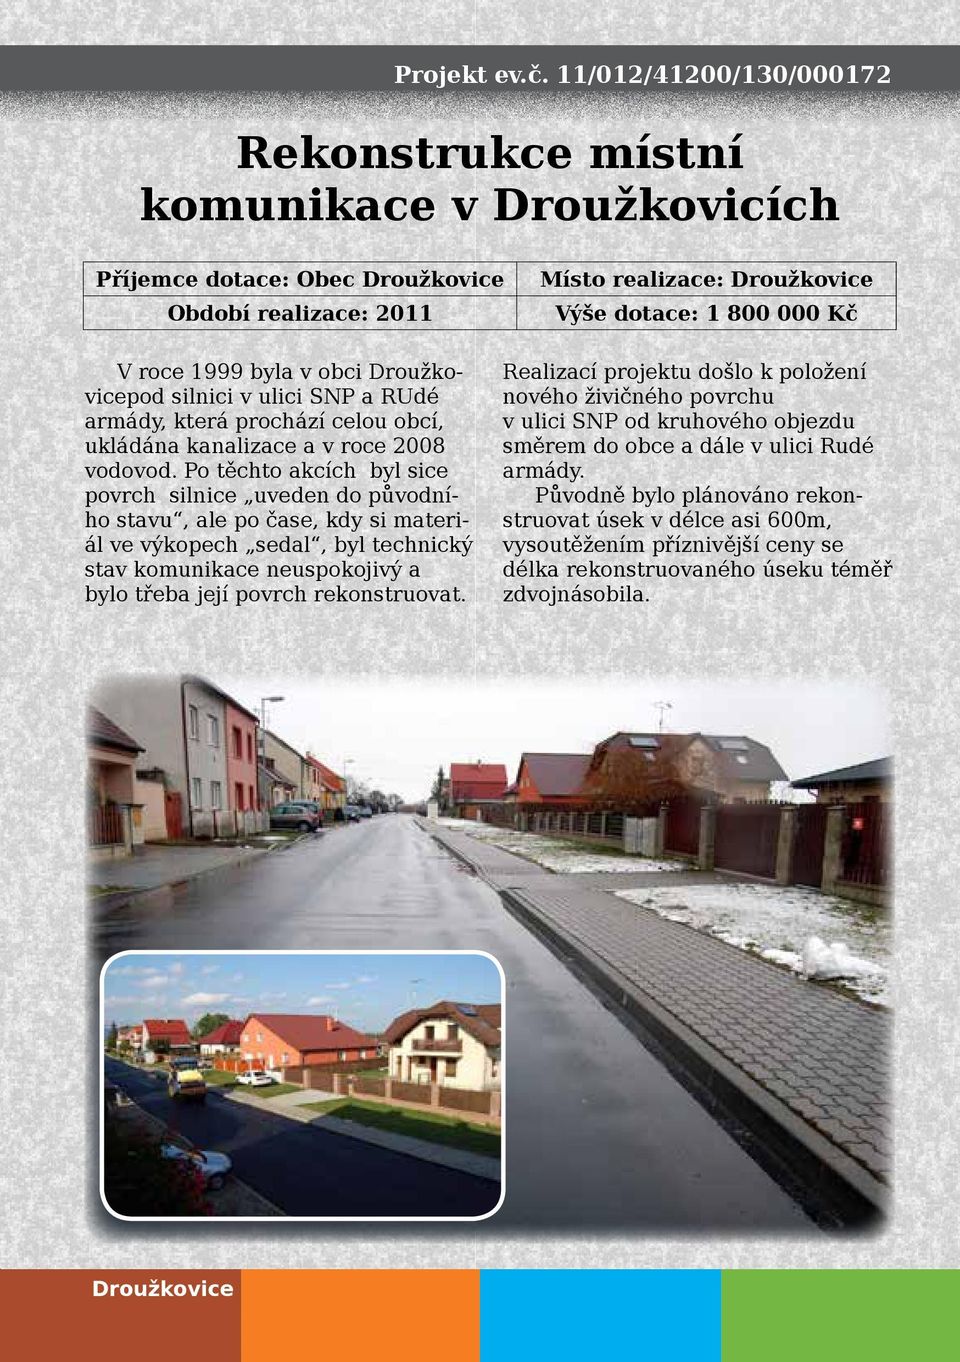 v obci Droužkovicepod silnici v ulici SNP a RUdé armády, která prochází celou obcí, ukládána kanalizace a v roce 2008 vodovod.